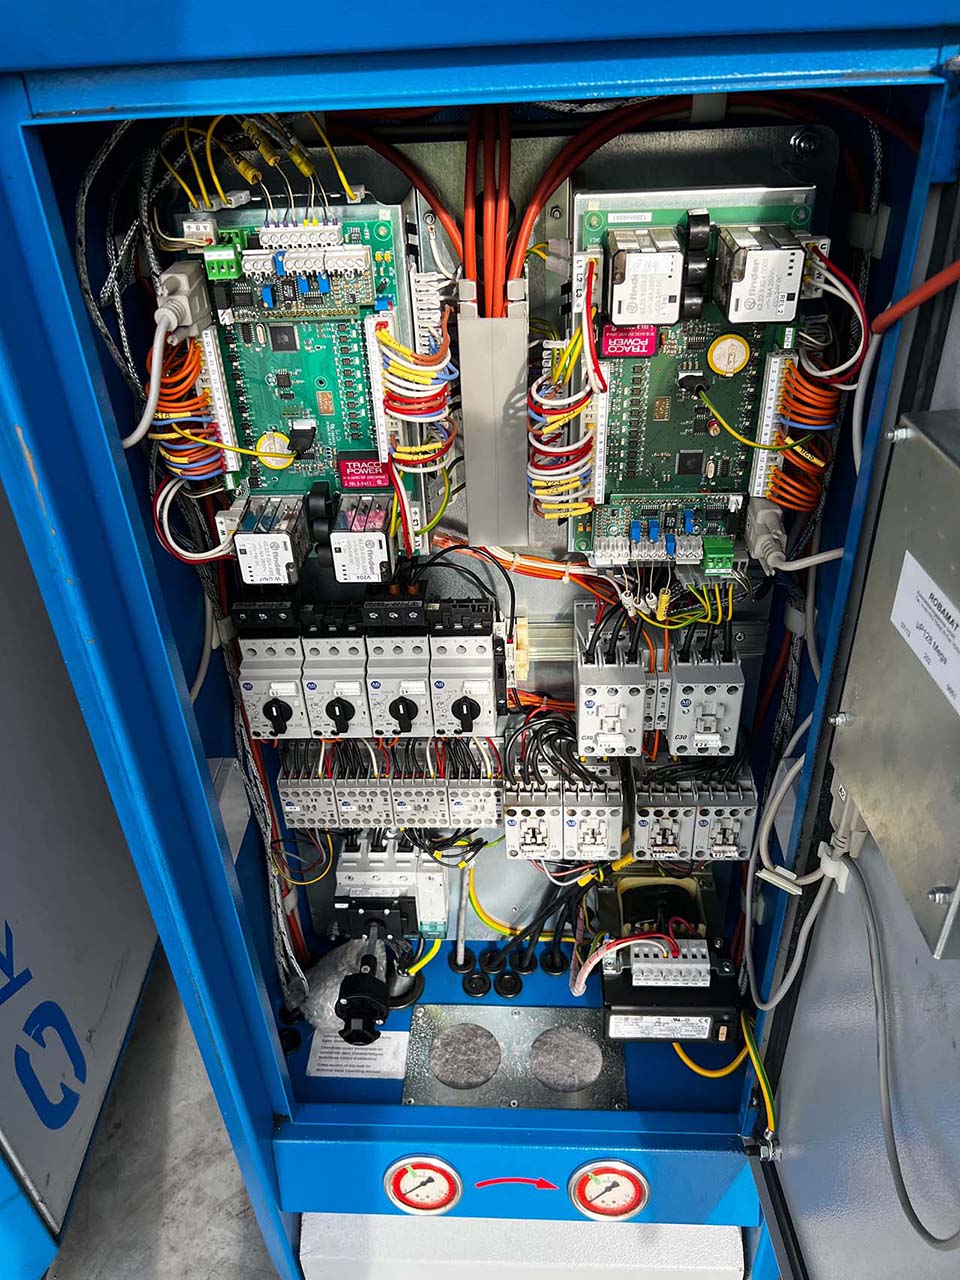 Robamat Thermocast 5212 yağ sıcaklık kontrol ünitesi ZU2197, kullanılmış